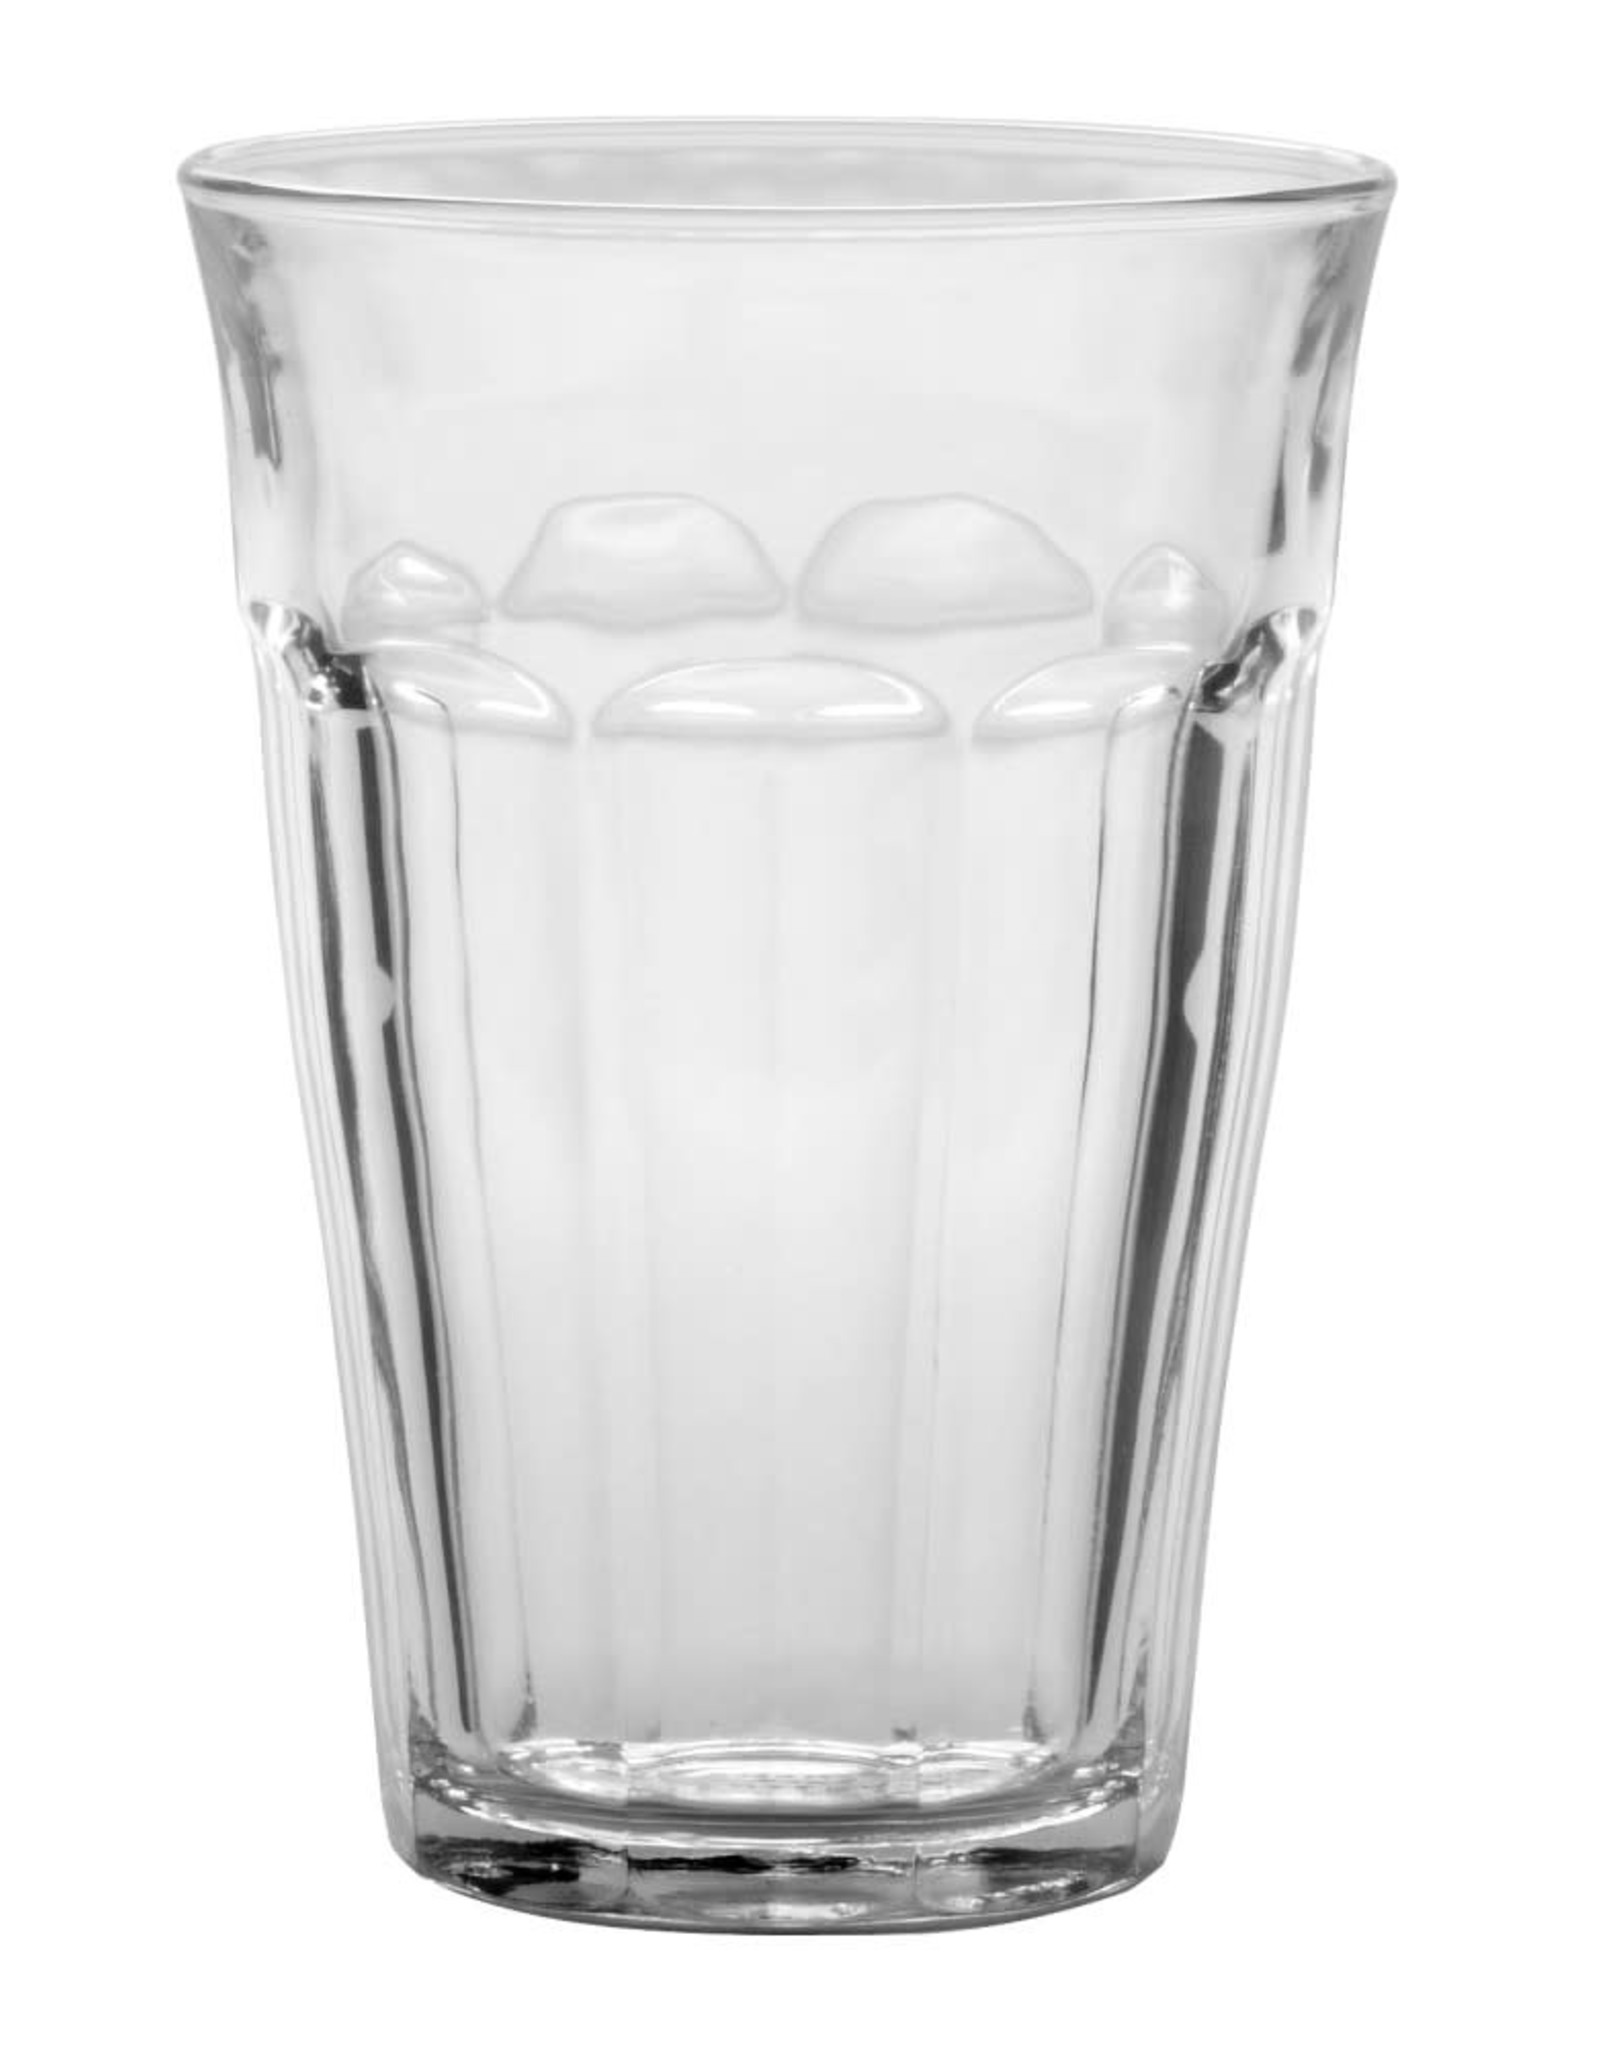 Duralex Duralex Picardie Clear Glass Tumbler, 360 ml